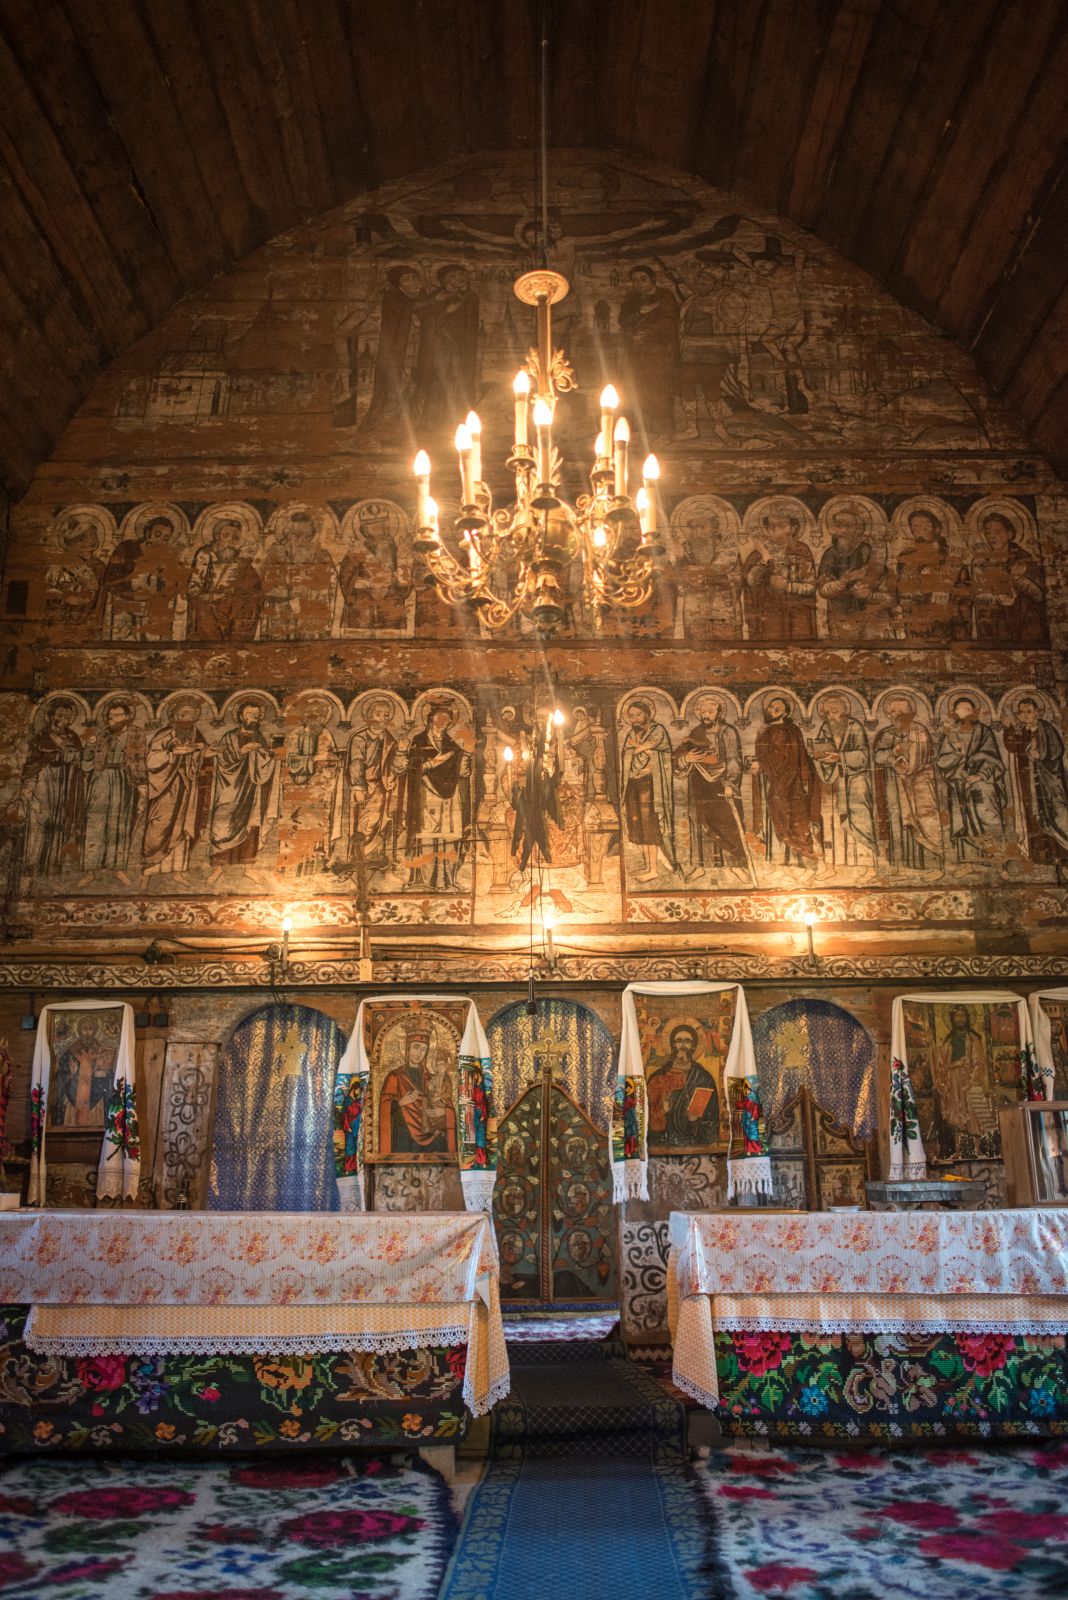 Según una inscripción en un icono, la pintura del altar, en estilo barroco, fue realizada por Ianoș Opriș en 1812